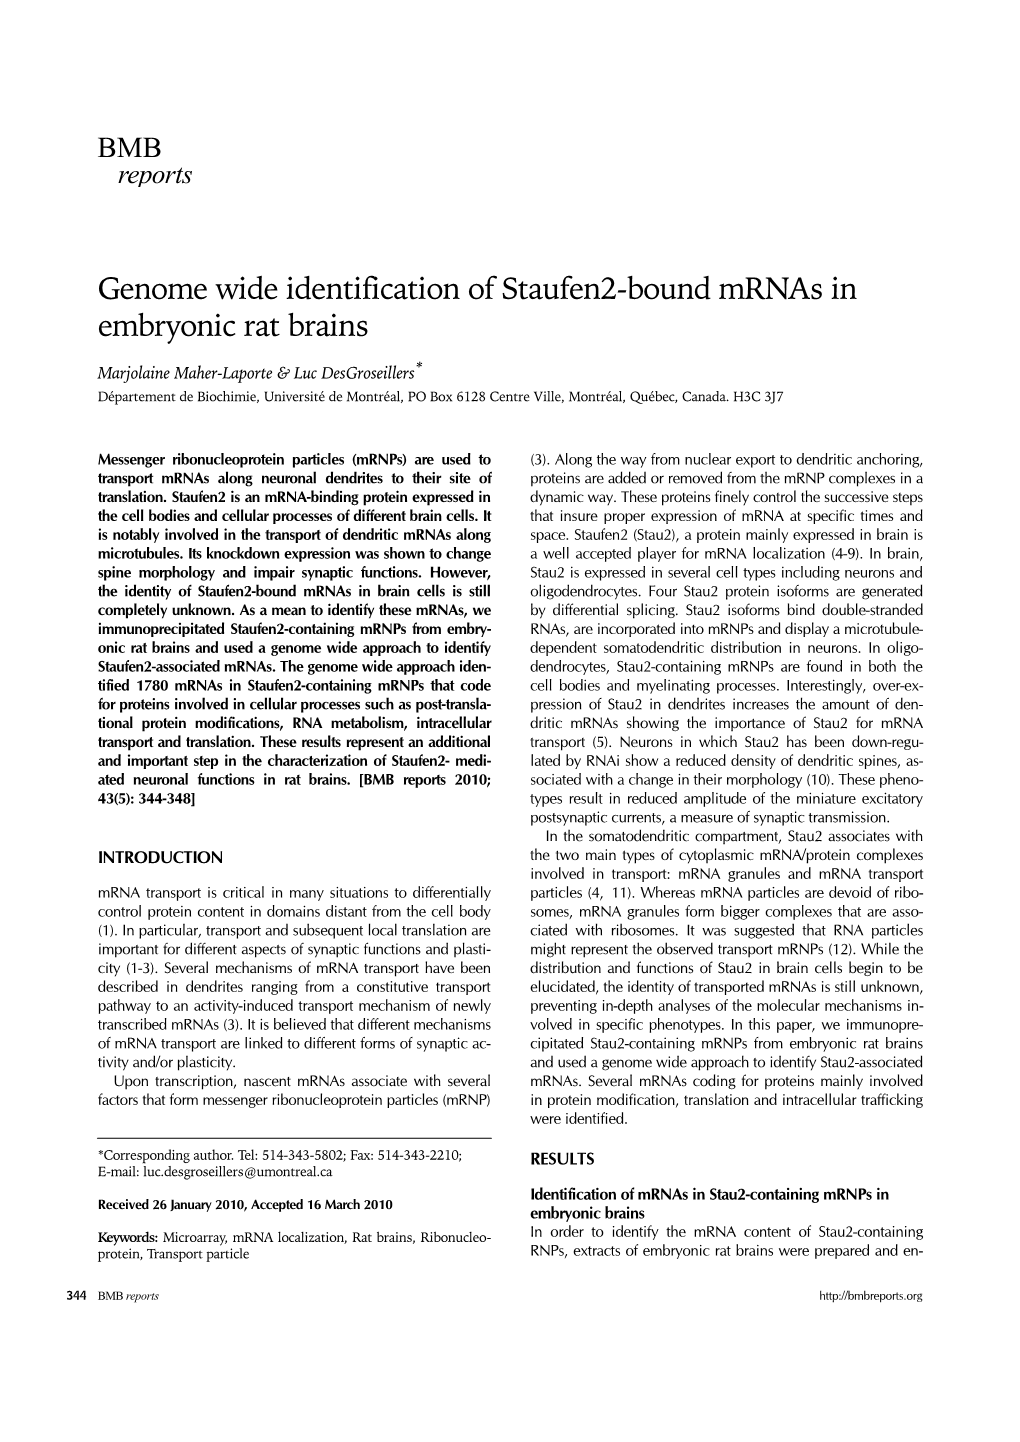 Genome Wide Identification of Staufen2-Bound Mrnas in Embryonic Rat Brains